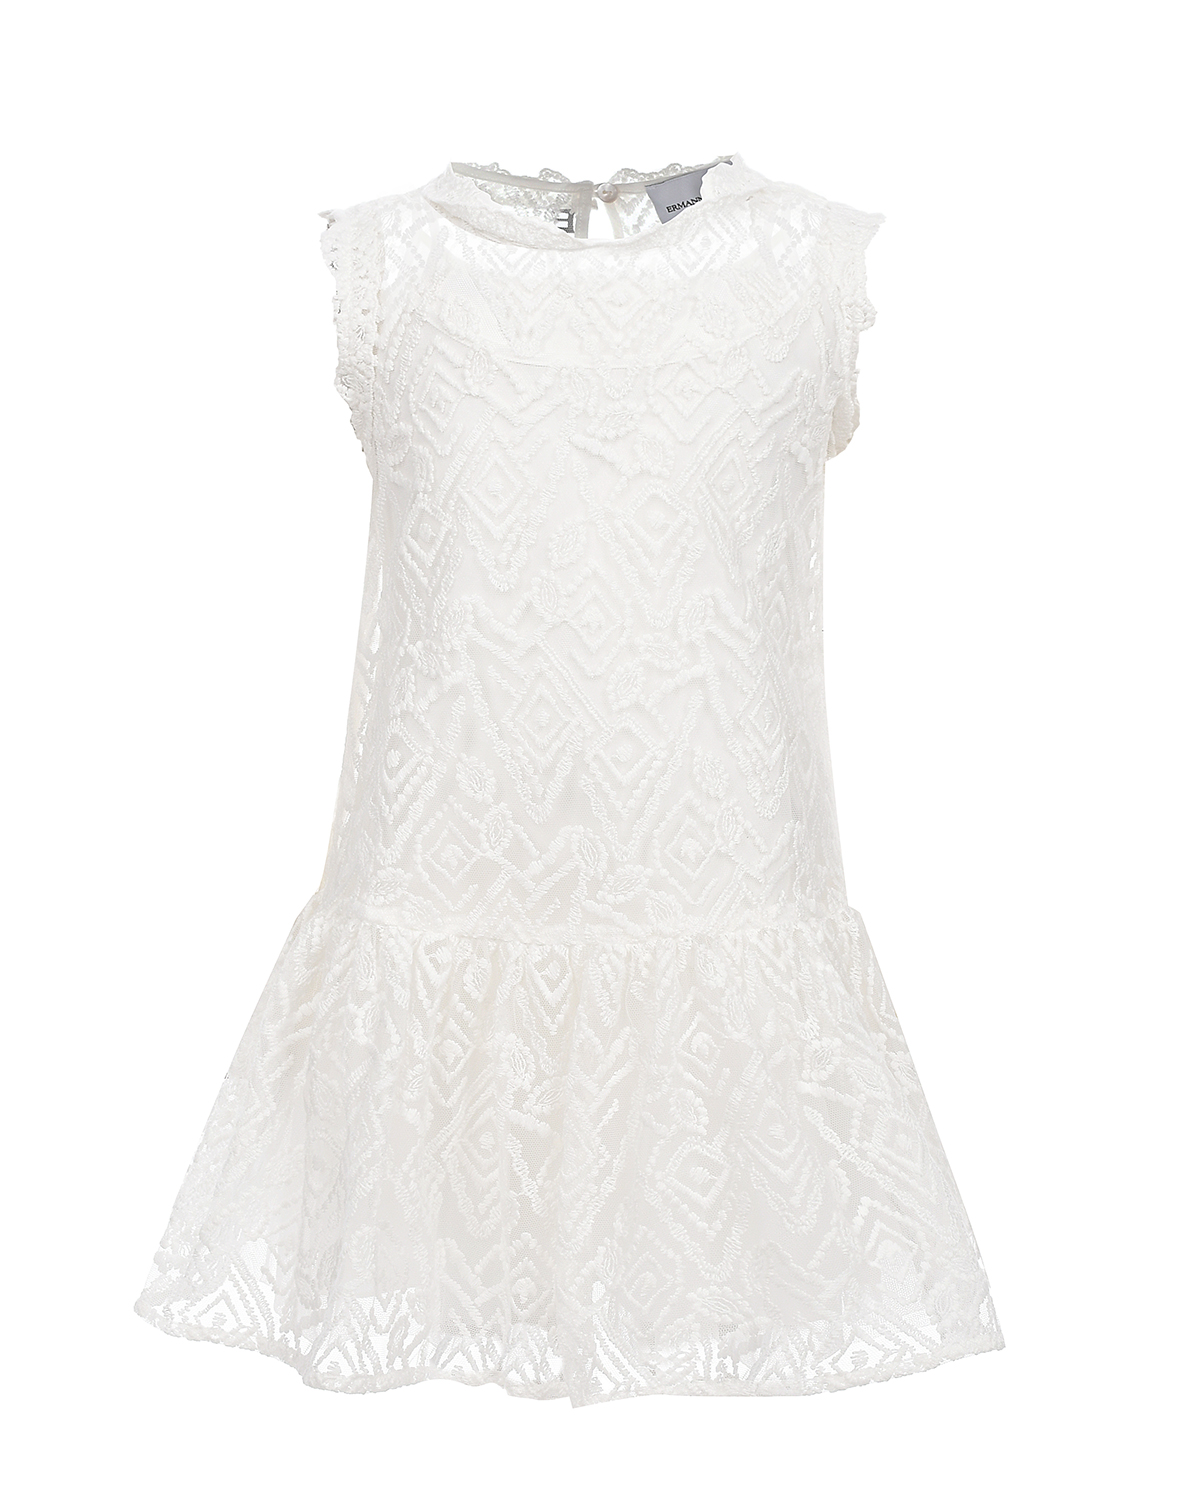 Белое платье с цветочной вышивкой Ermanno Scervino платье женское домашнее белое в полоску